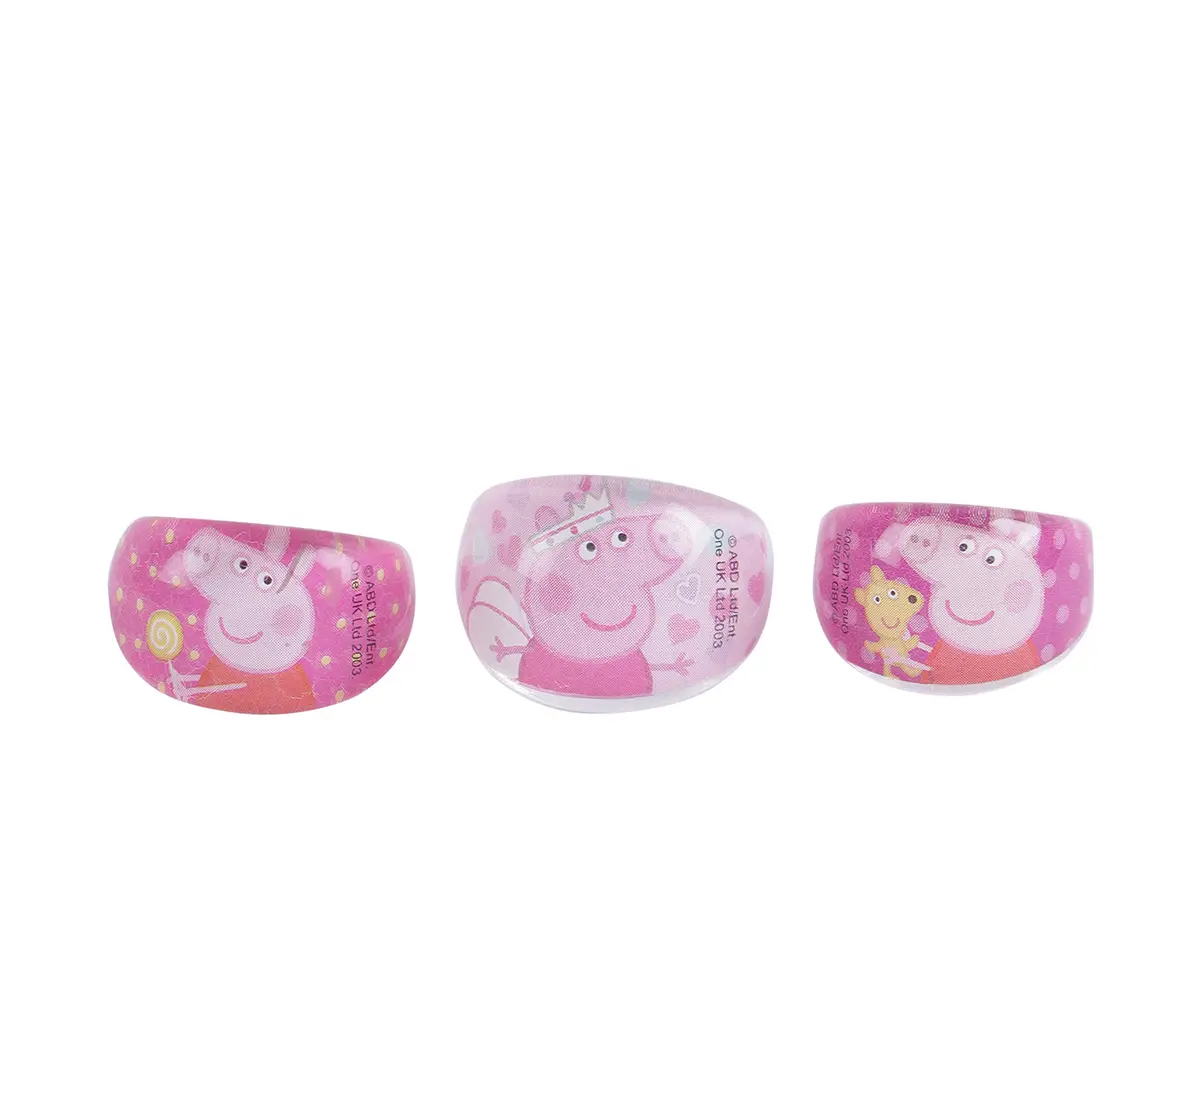 Li'l Diva Peppa Pig Finger Rings Pack of 3 For Girls of Age 3Y+, Multicolour